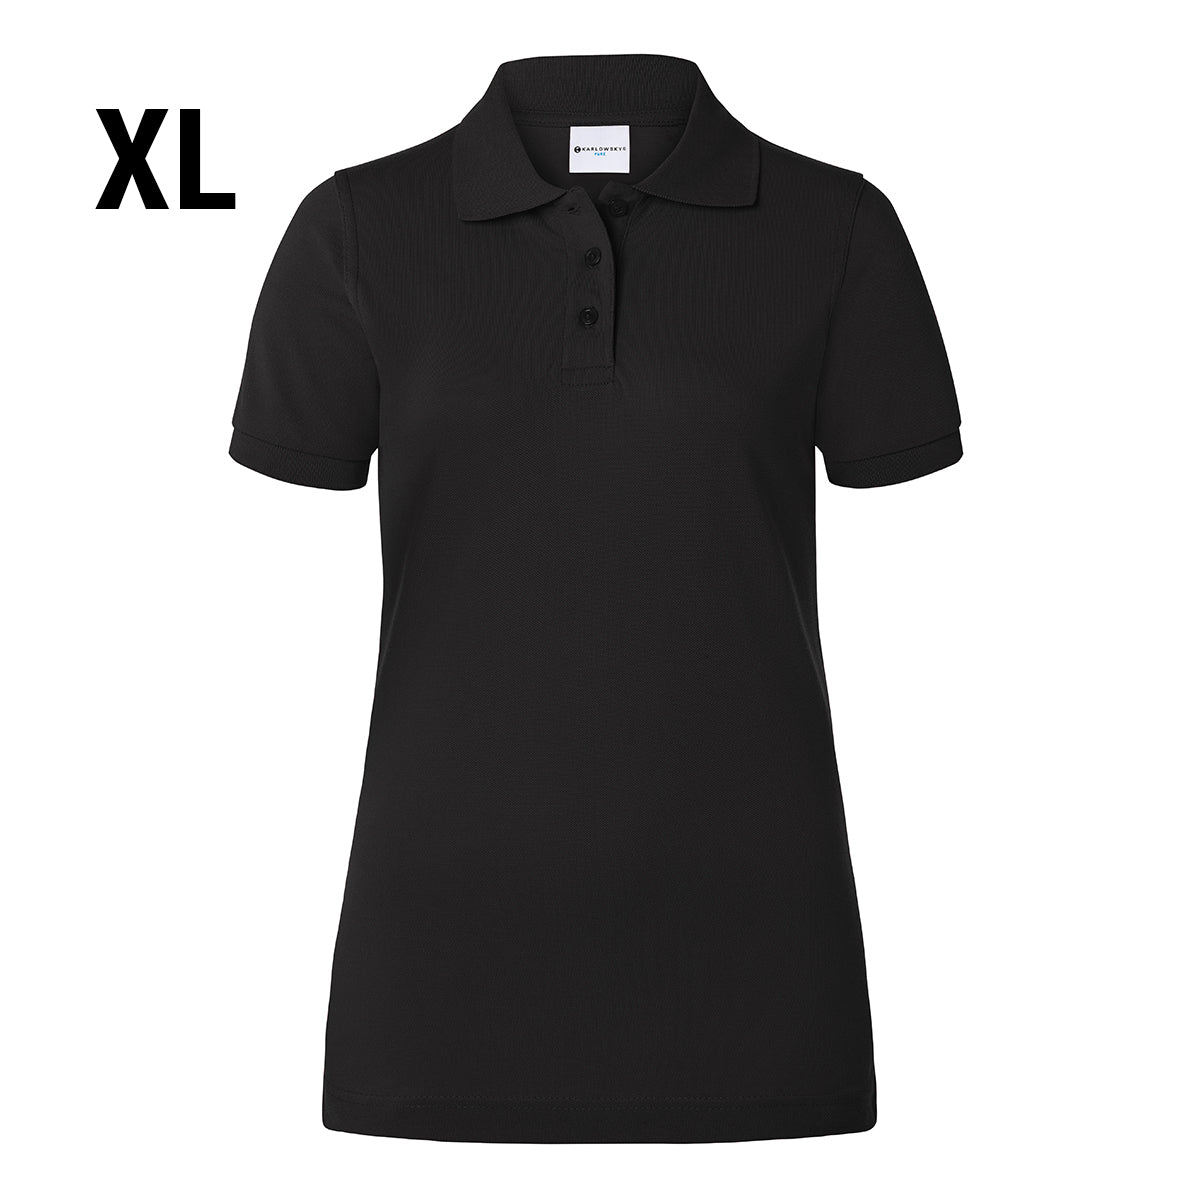 Karlowsky - Arbejdsbeklædning Basic Poloshirt til damer - Sort - Størrelse: XL